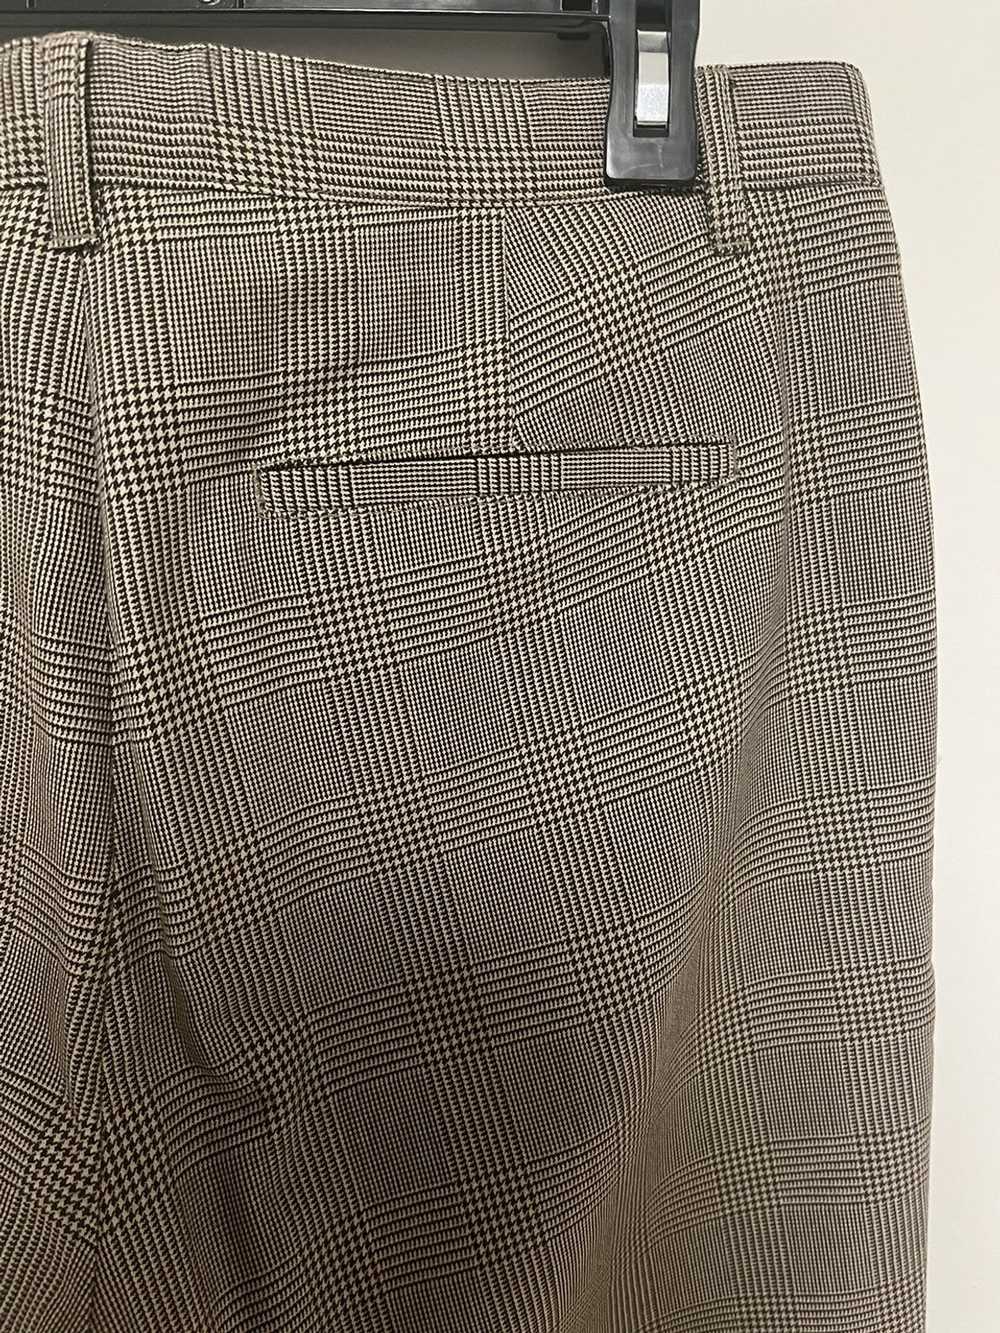 A.P.C. APC Plaid Trousers - image 6